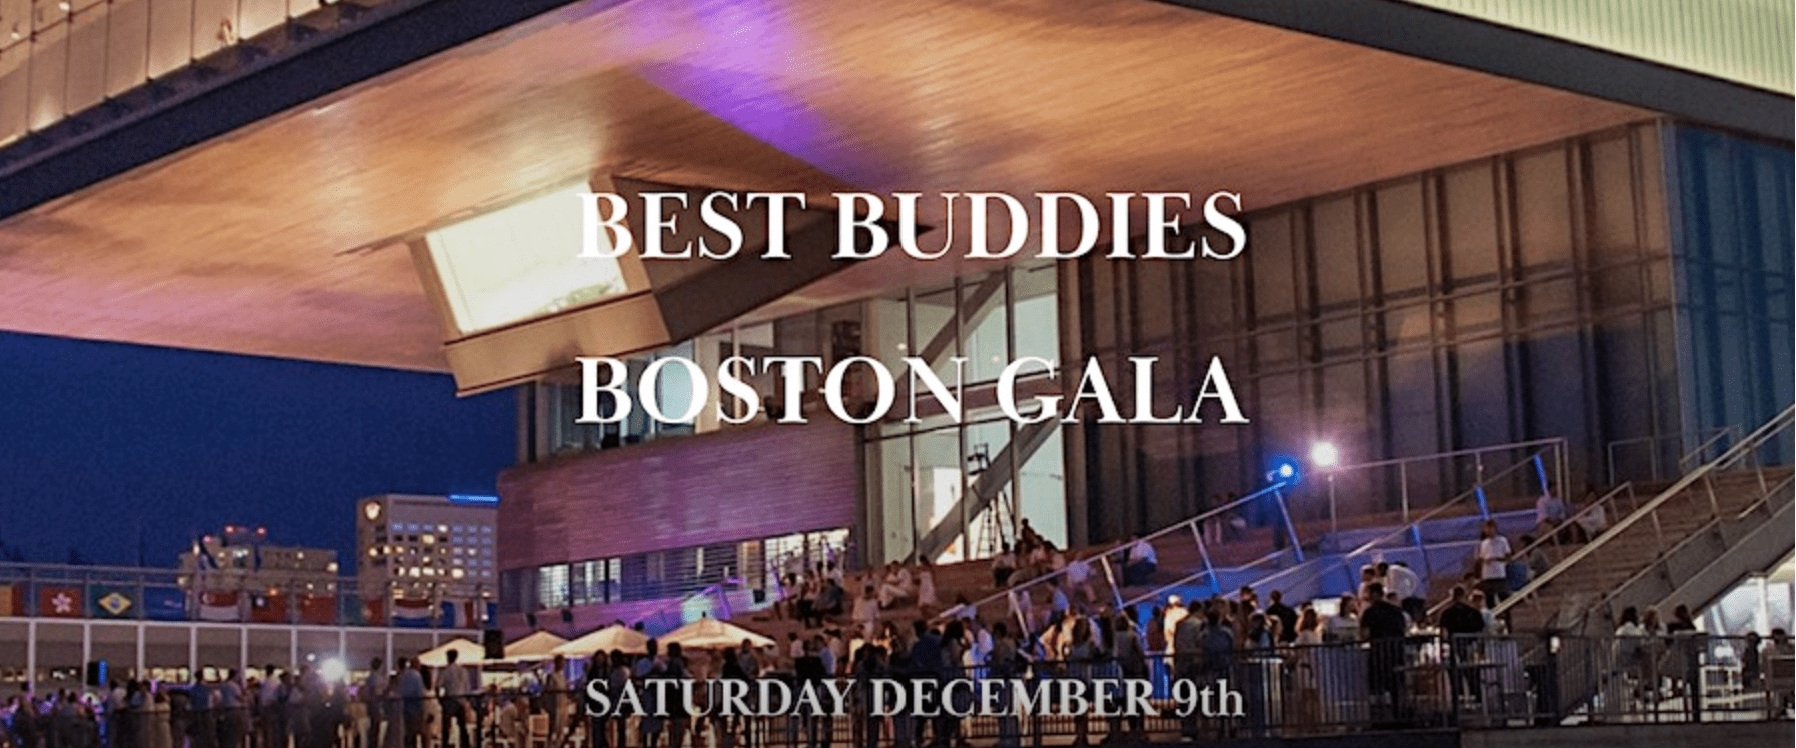 Best Buddies Boston Gala